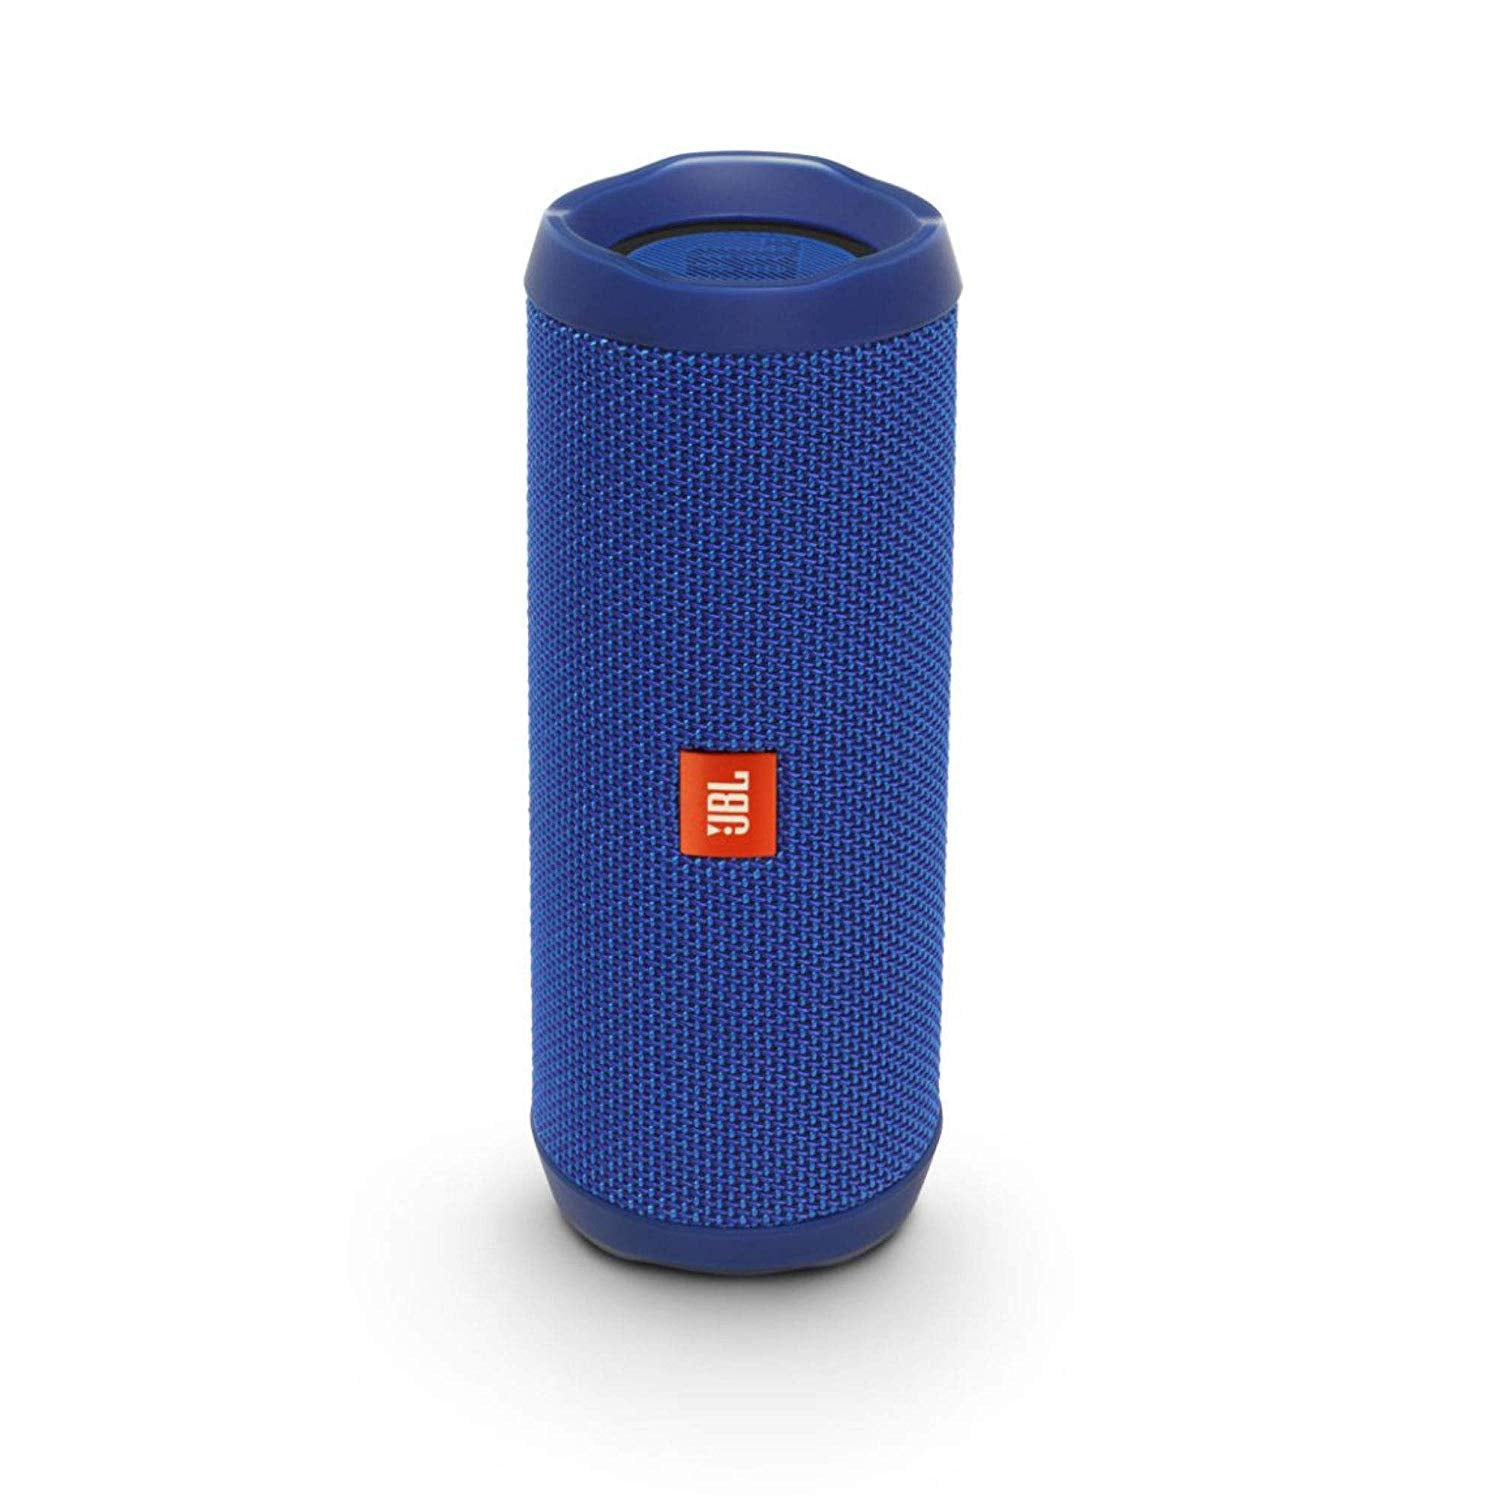 JBL Flip 4 Waterproof Portable Bluetooth Speaker - Blue (Refurbished)